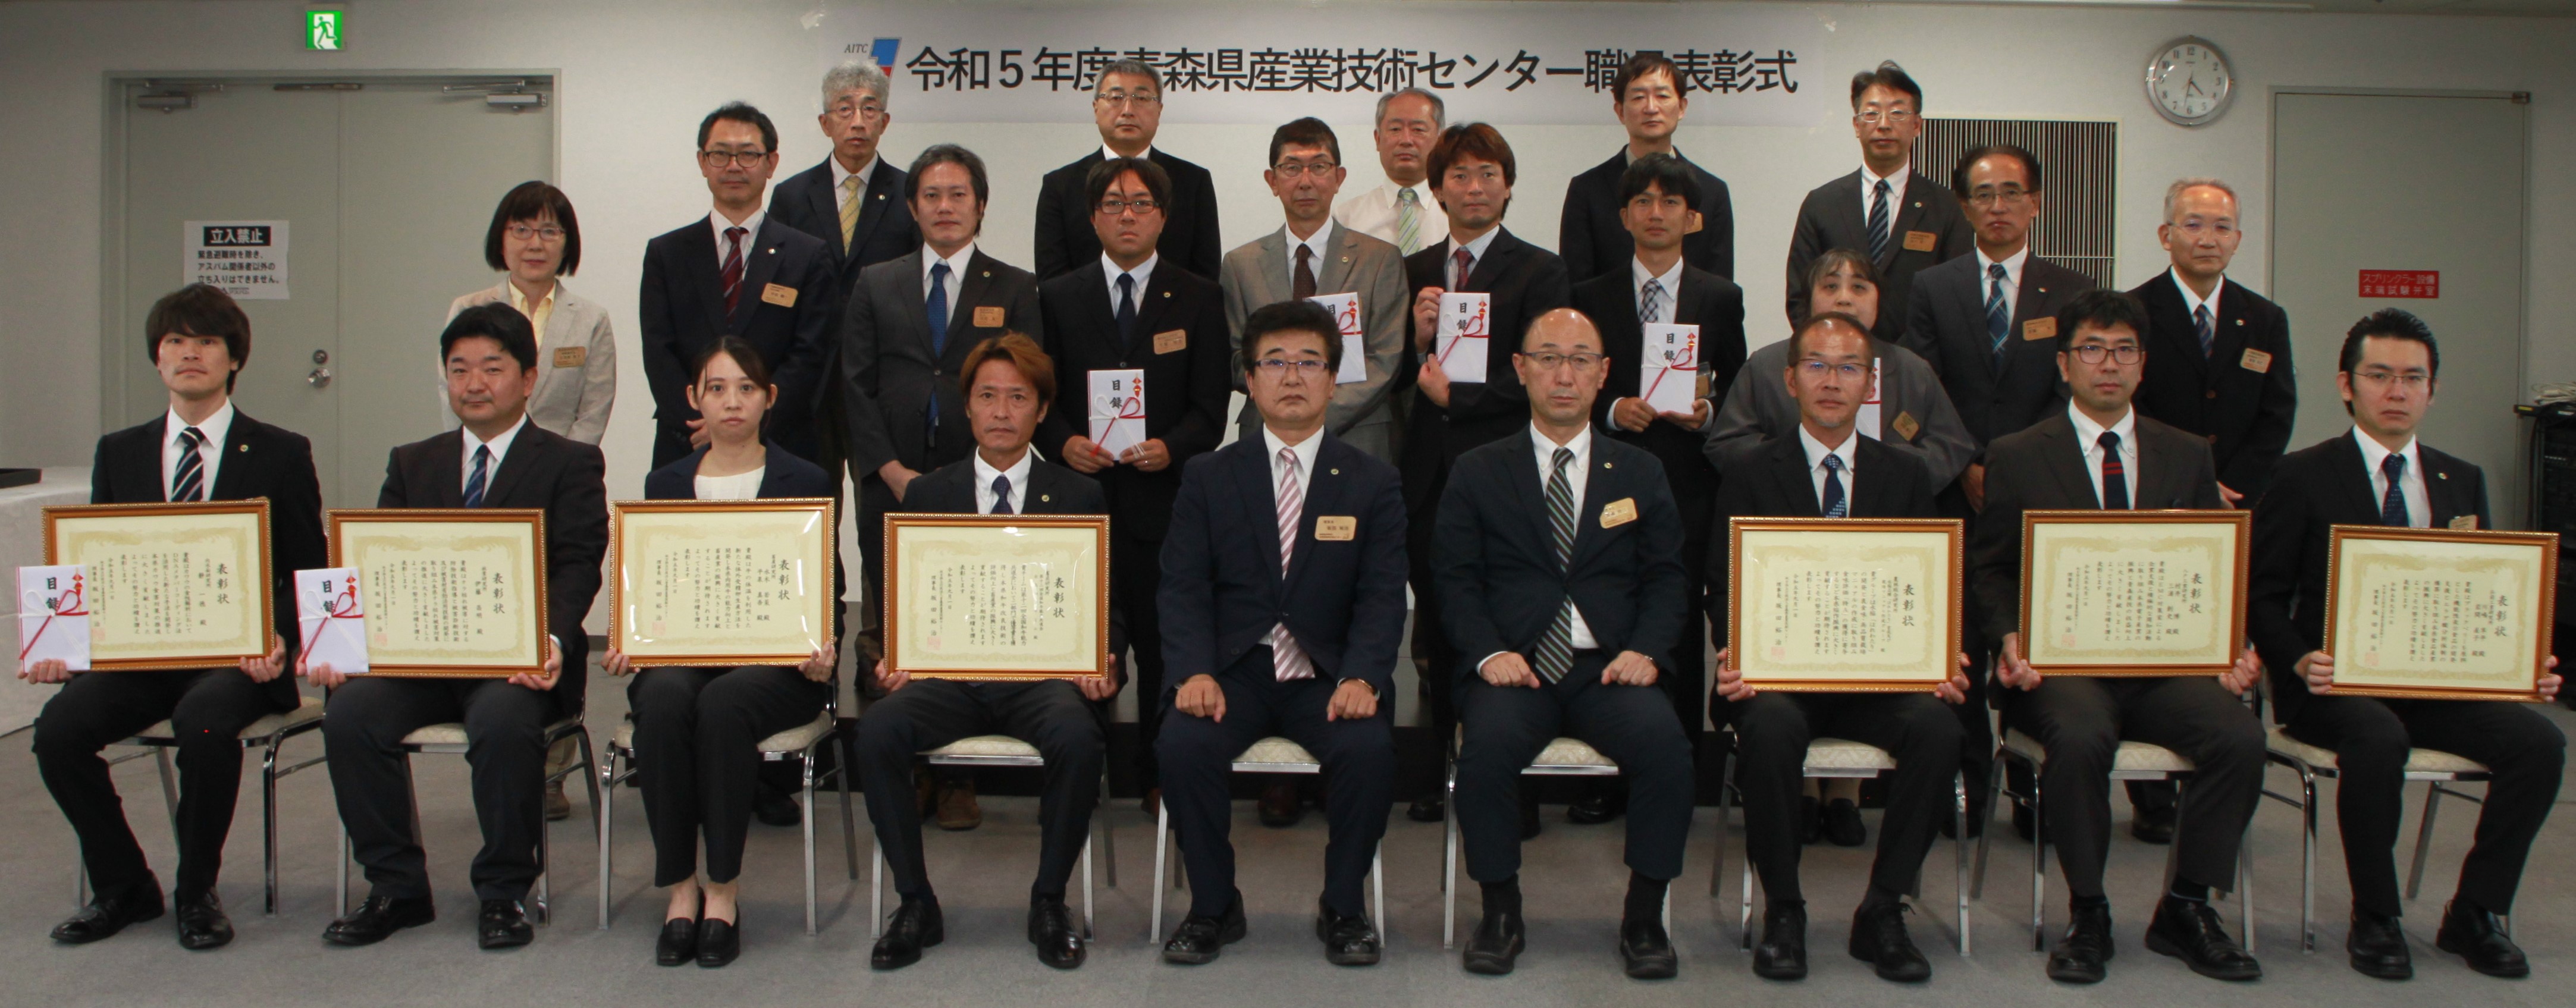 令和５年度職員表彰受賞者の集合写真